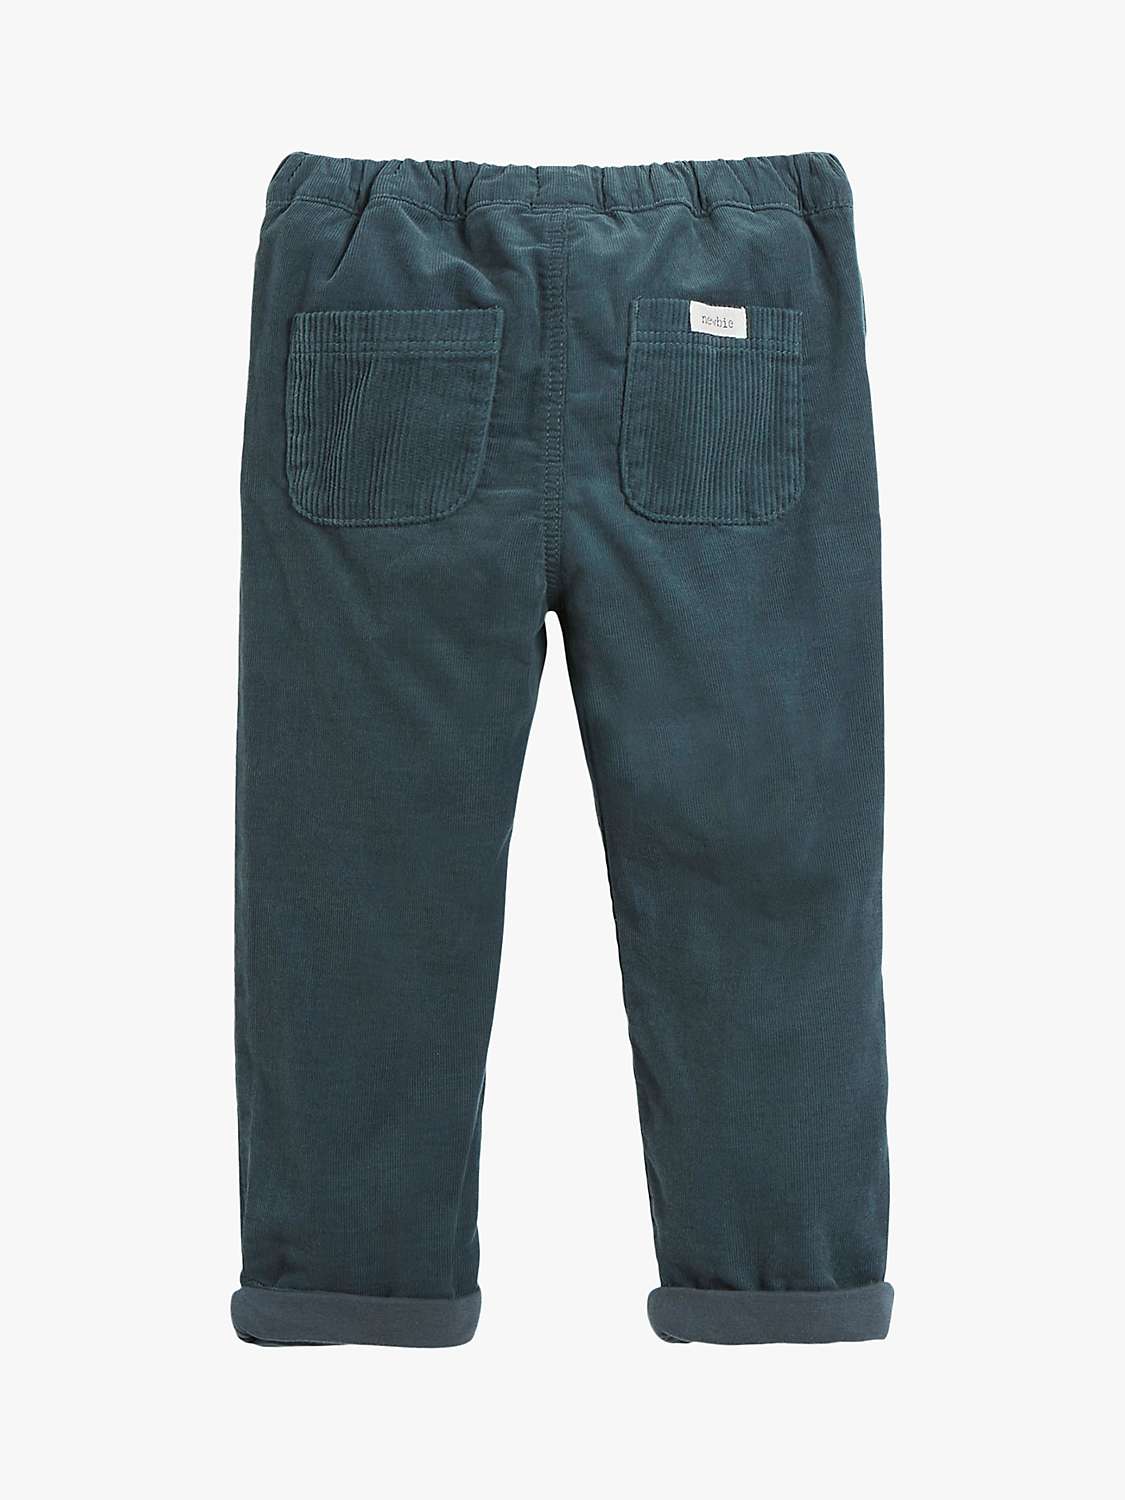 Buy Newbie Kids' Plain Corduroy Trousers, Dark Slate Online at johnlewis.com